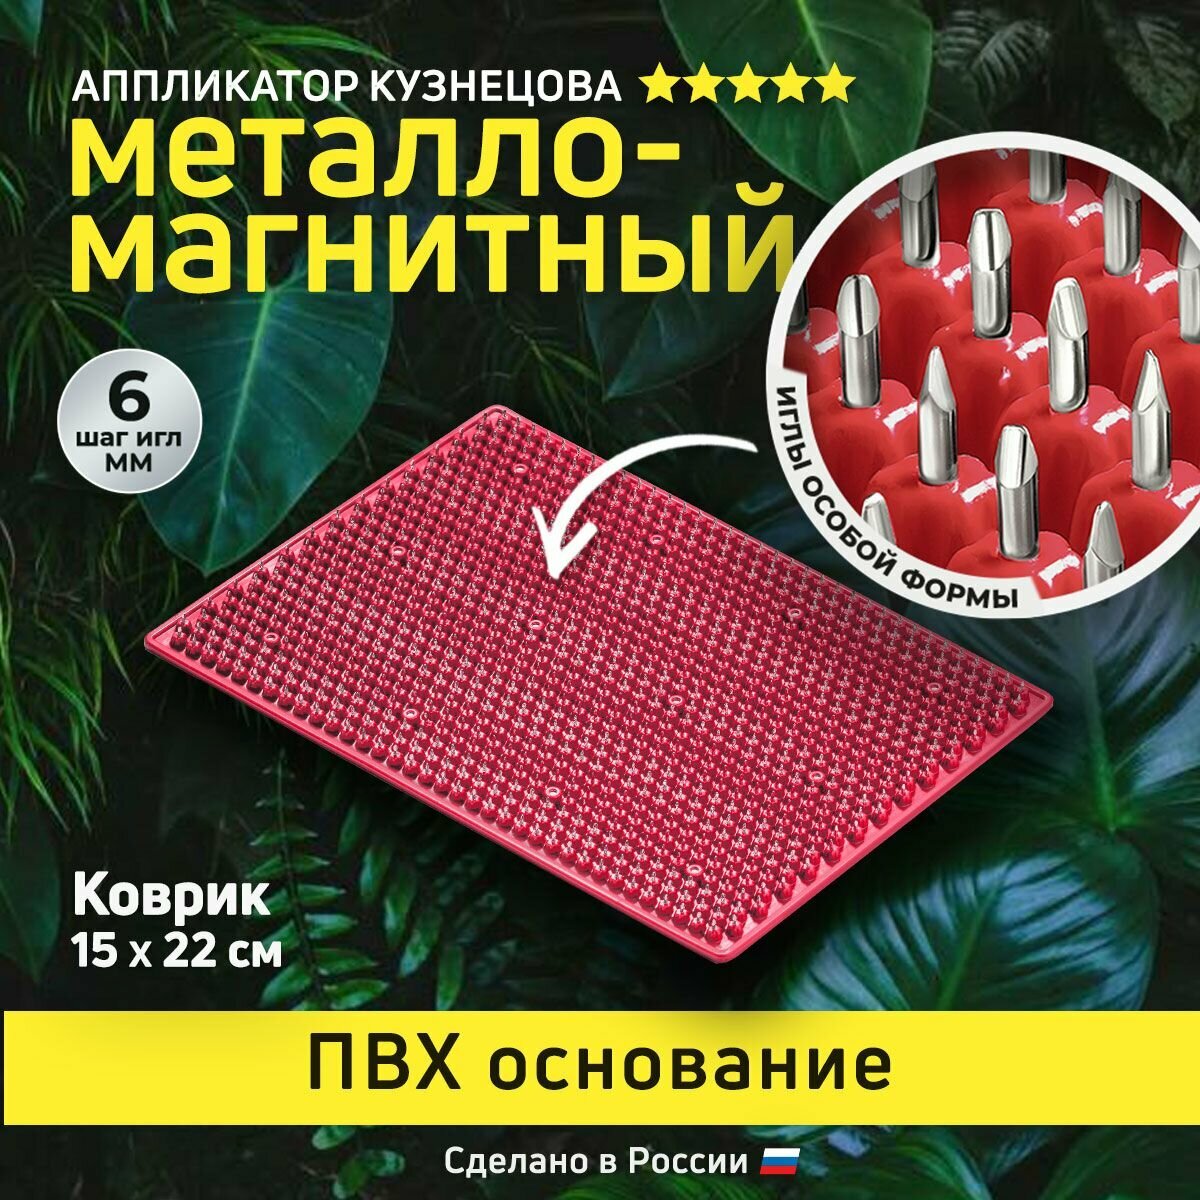 Аппликатор Кузнецова. Игольчатый коврик с металлическими иглами. Массажер без подложки 15 х 22 см красный